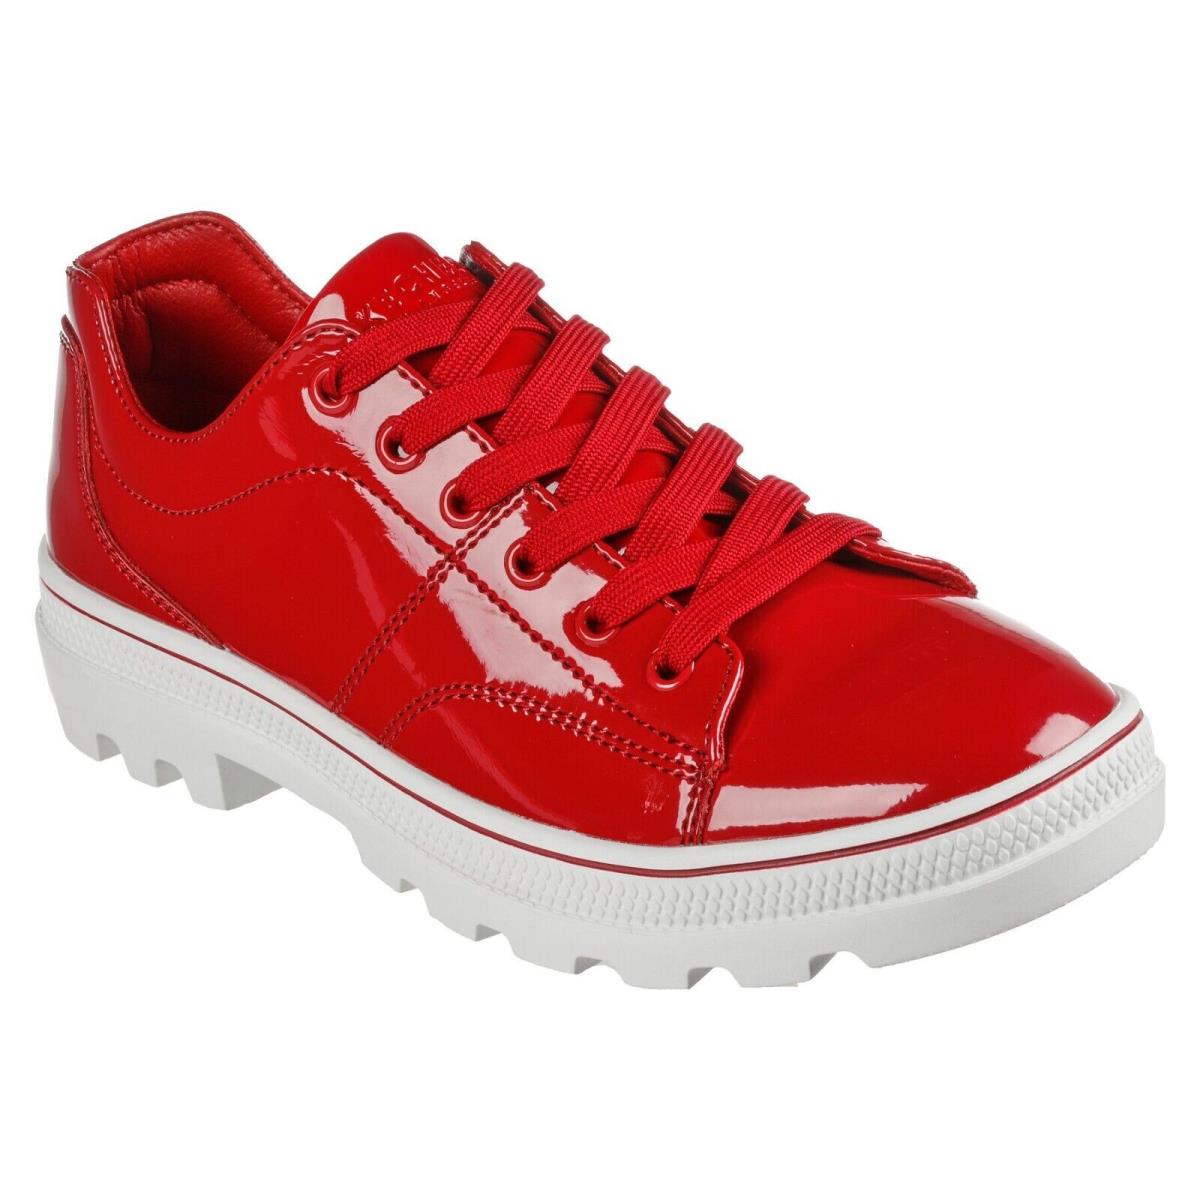 Skechers shoes Roadies - Red 5